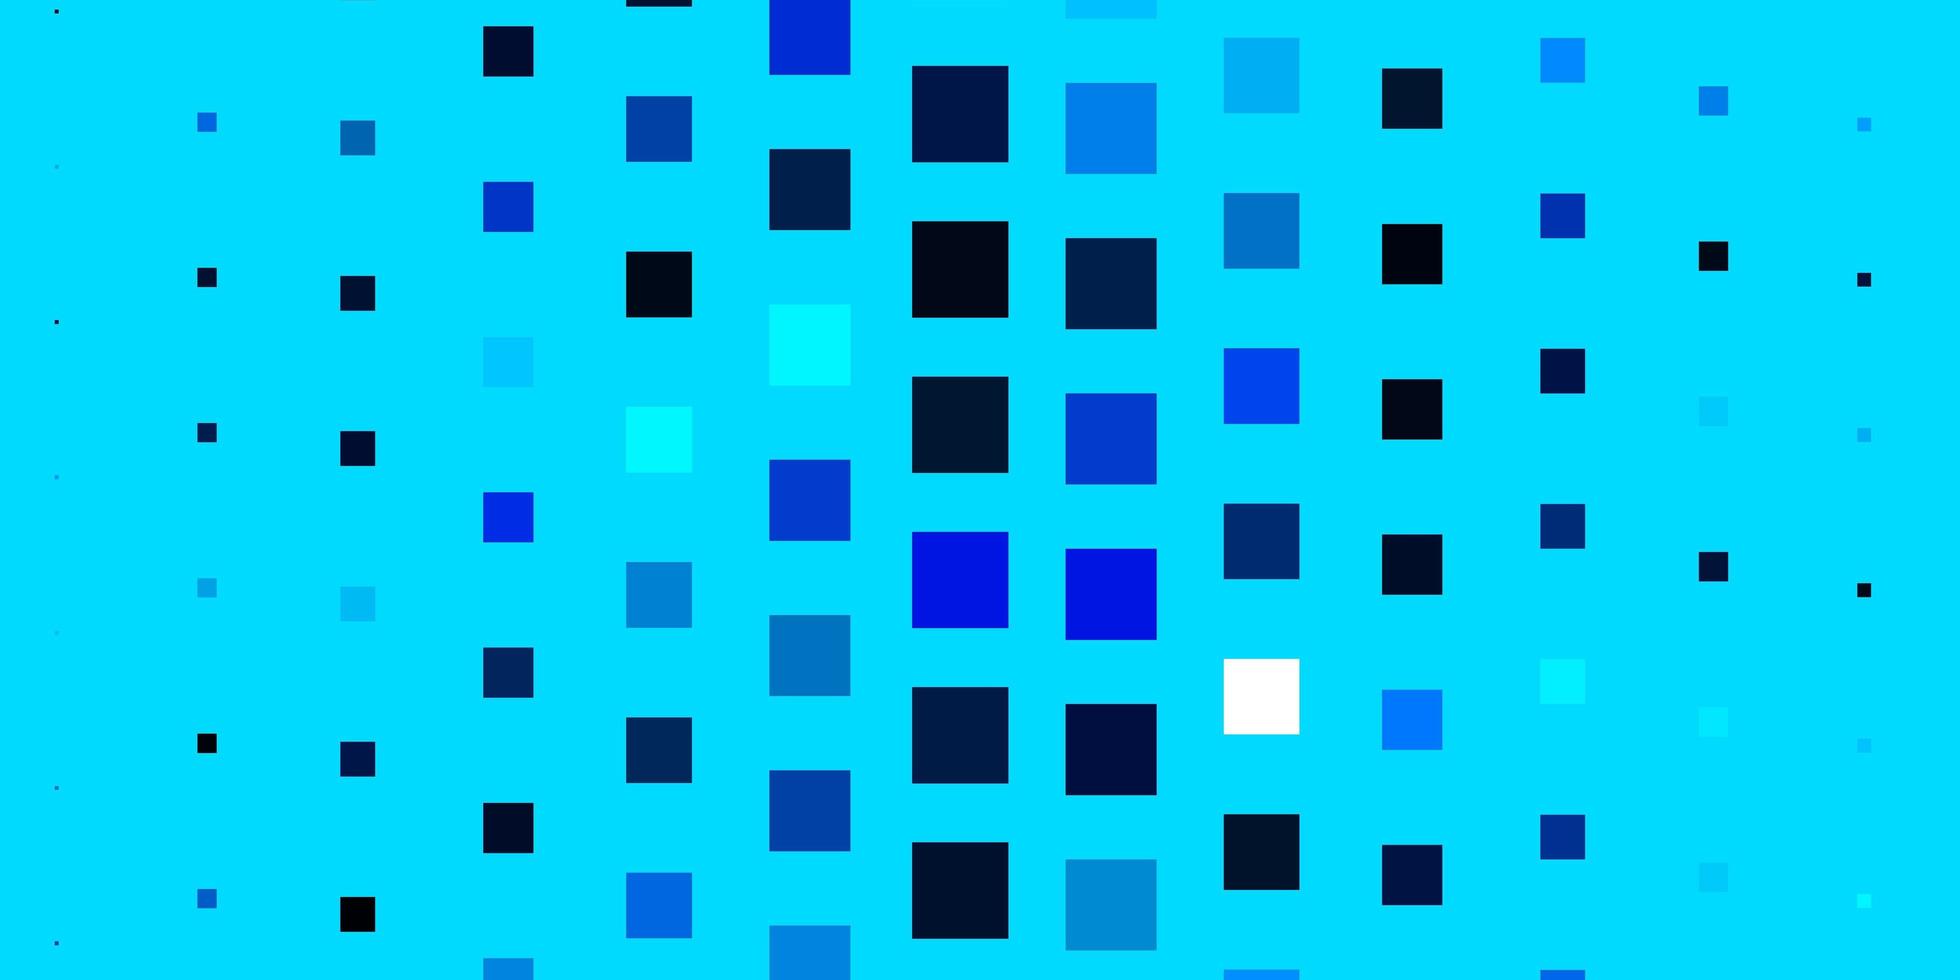 motif vectoriel bleu clair dans un style carré nouvelle illustration abstraite avec des formes rectangulaires meilleur design pour votre bannière d'affiche publicitaire